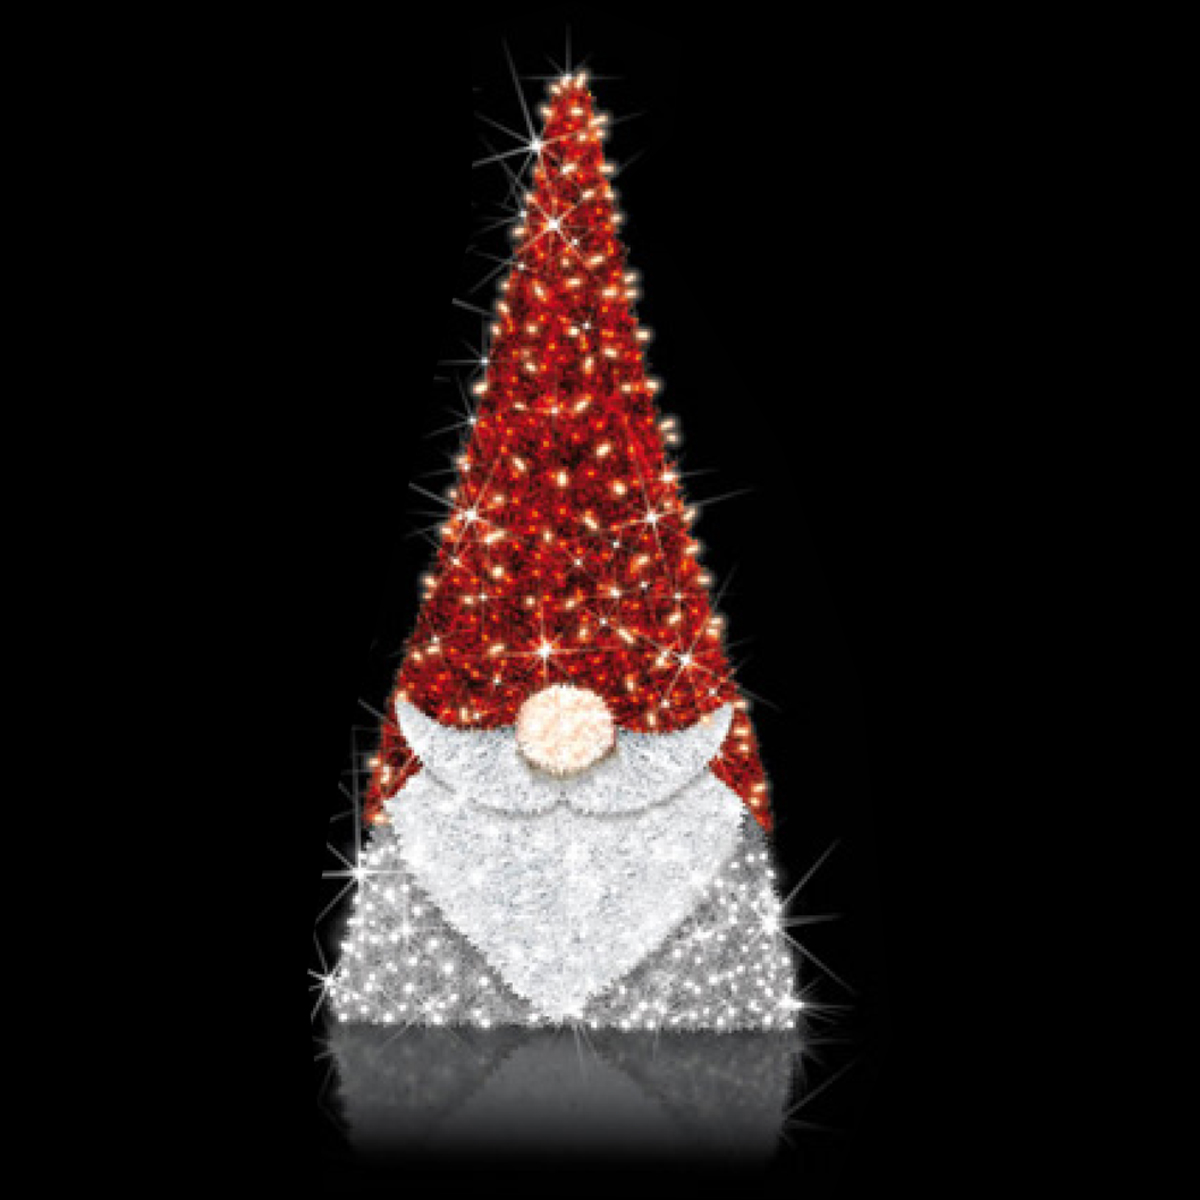 3D Gnome - 5.9ft Tall - LED Lit Christmas Display